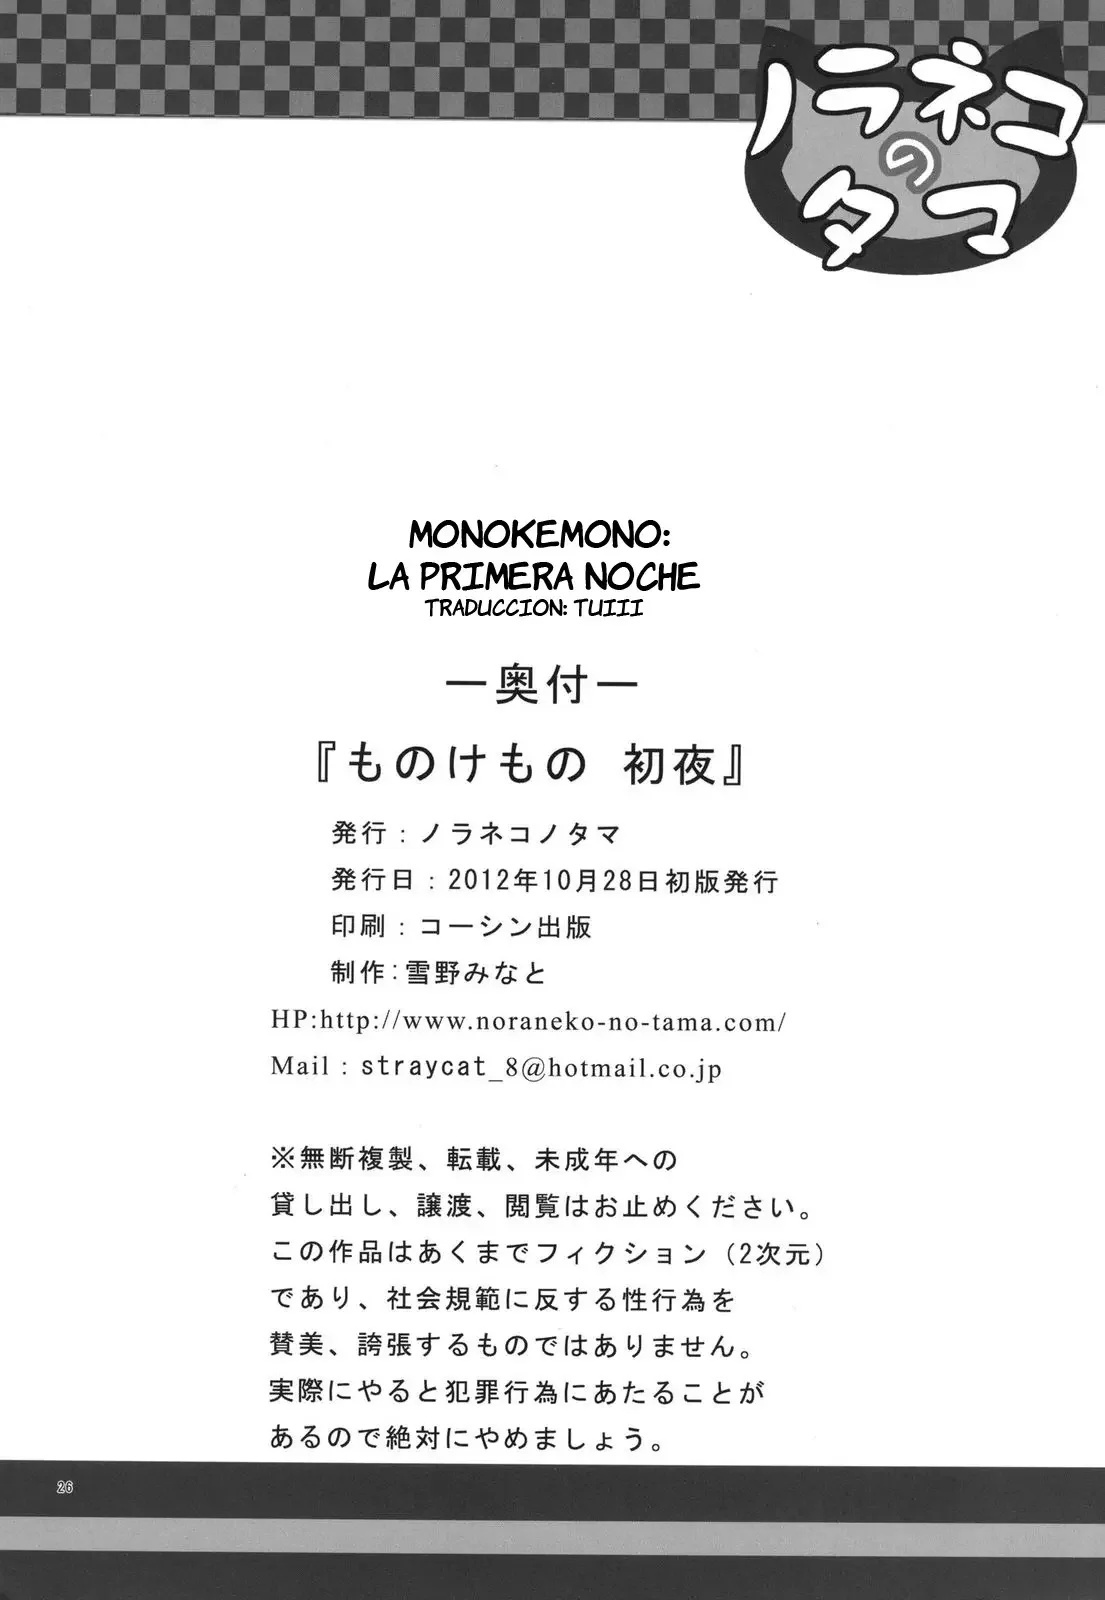 Monokemono Shoya - 25